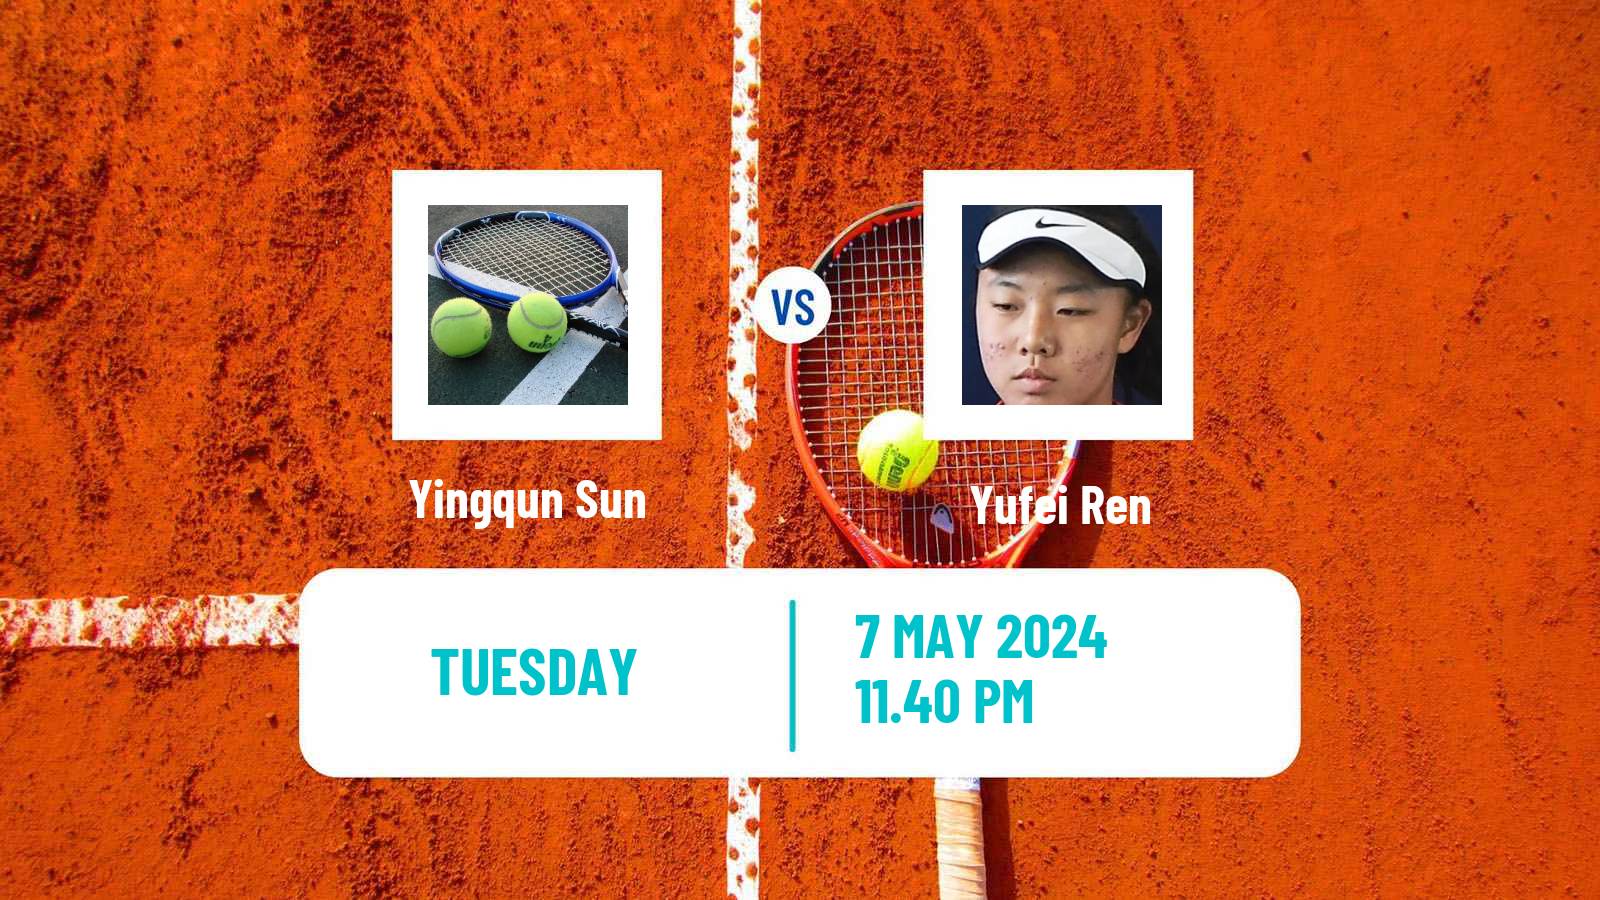 Tennis ITF W75 Luan Women Yingqun Sun - Yufei Ren